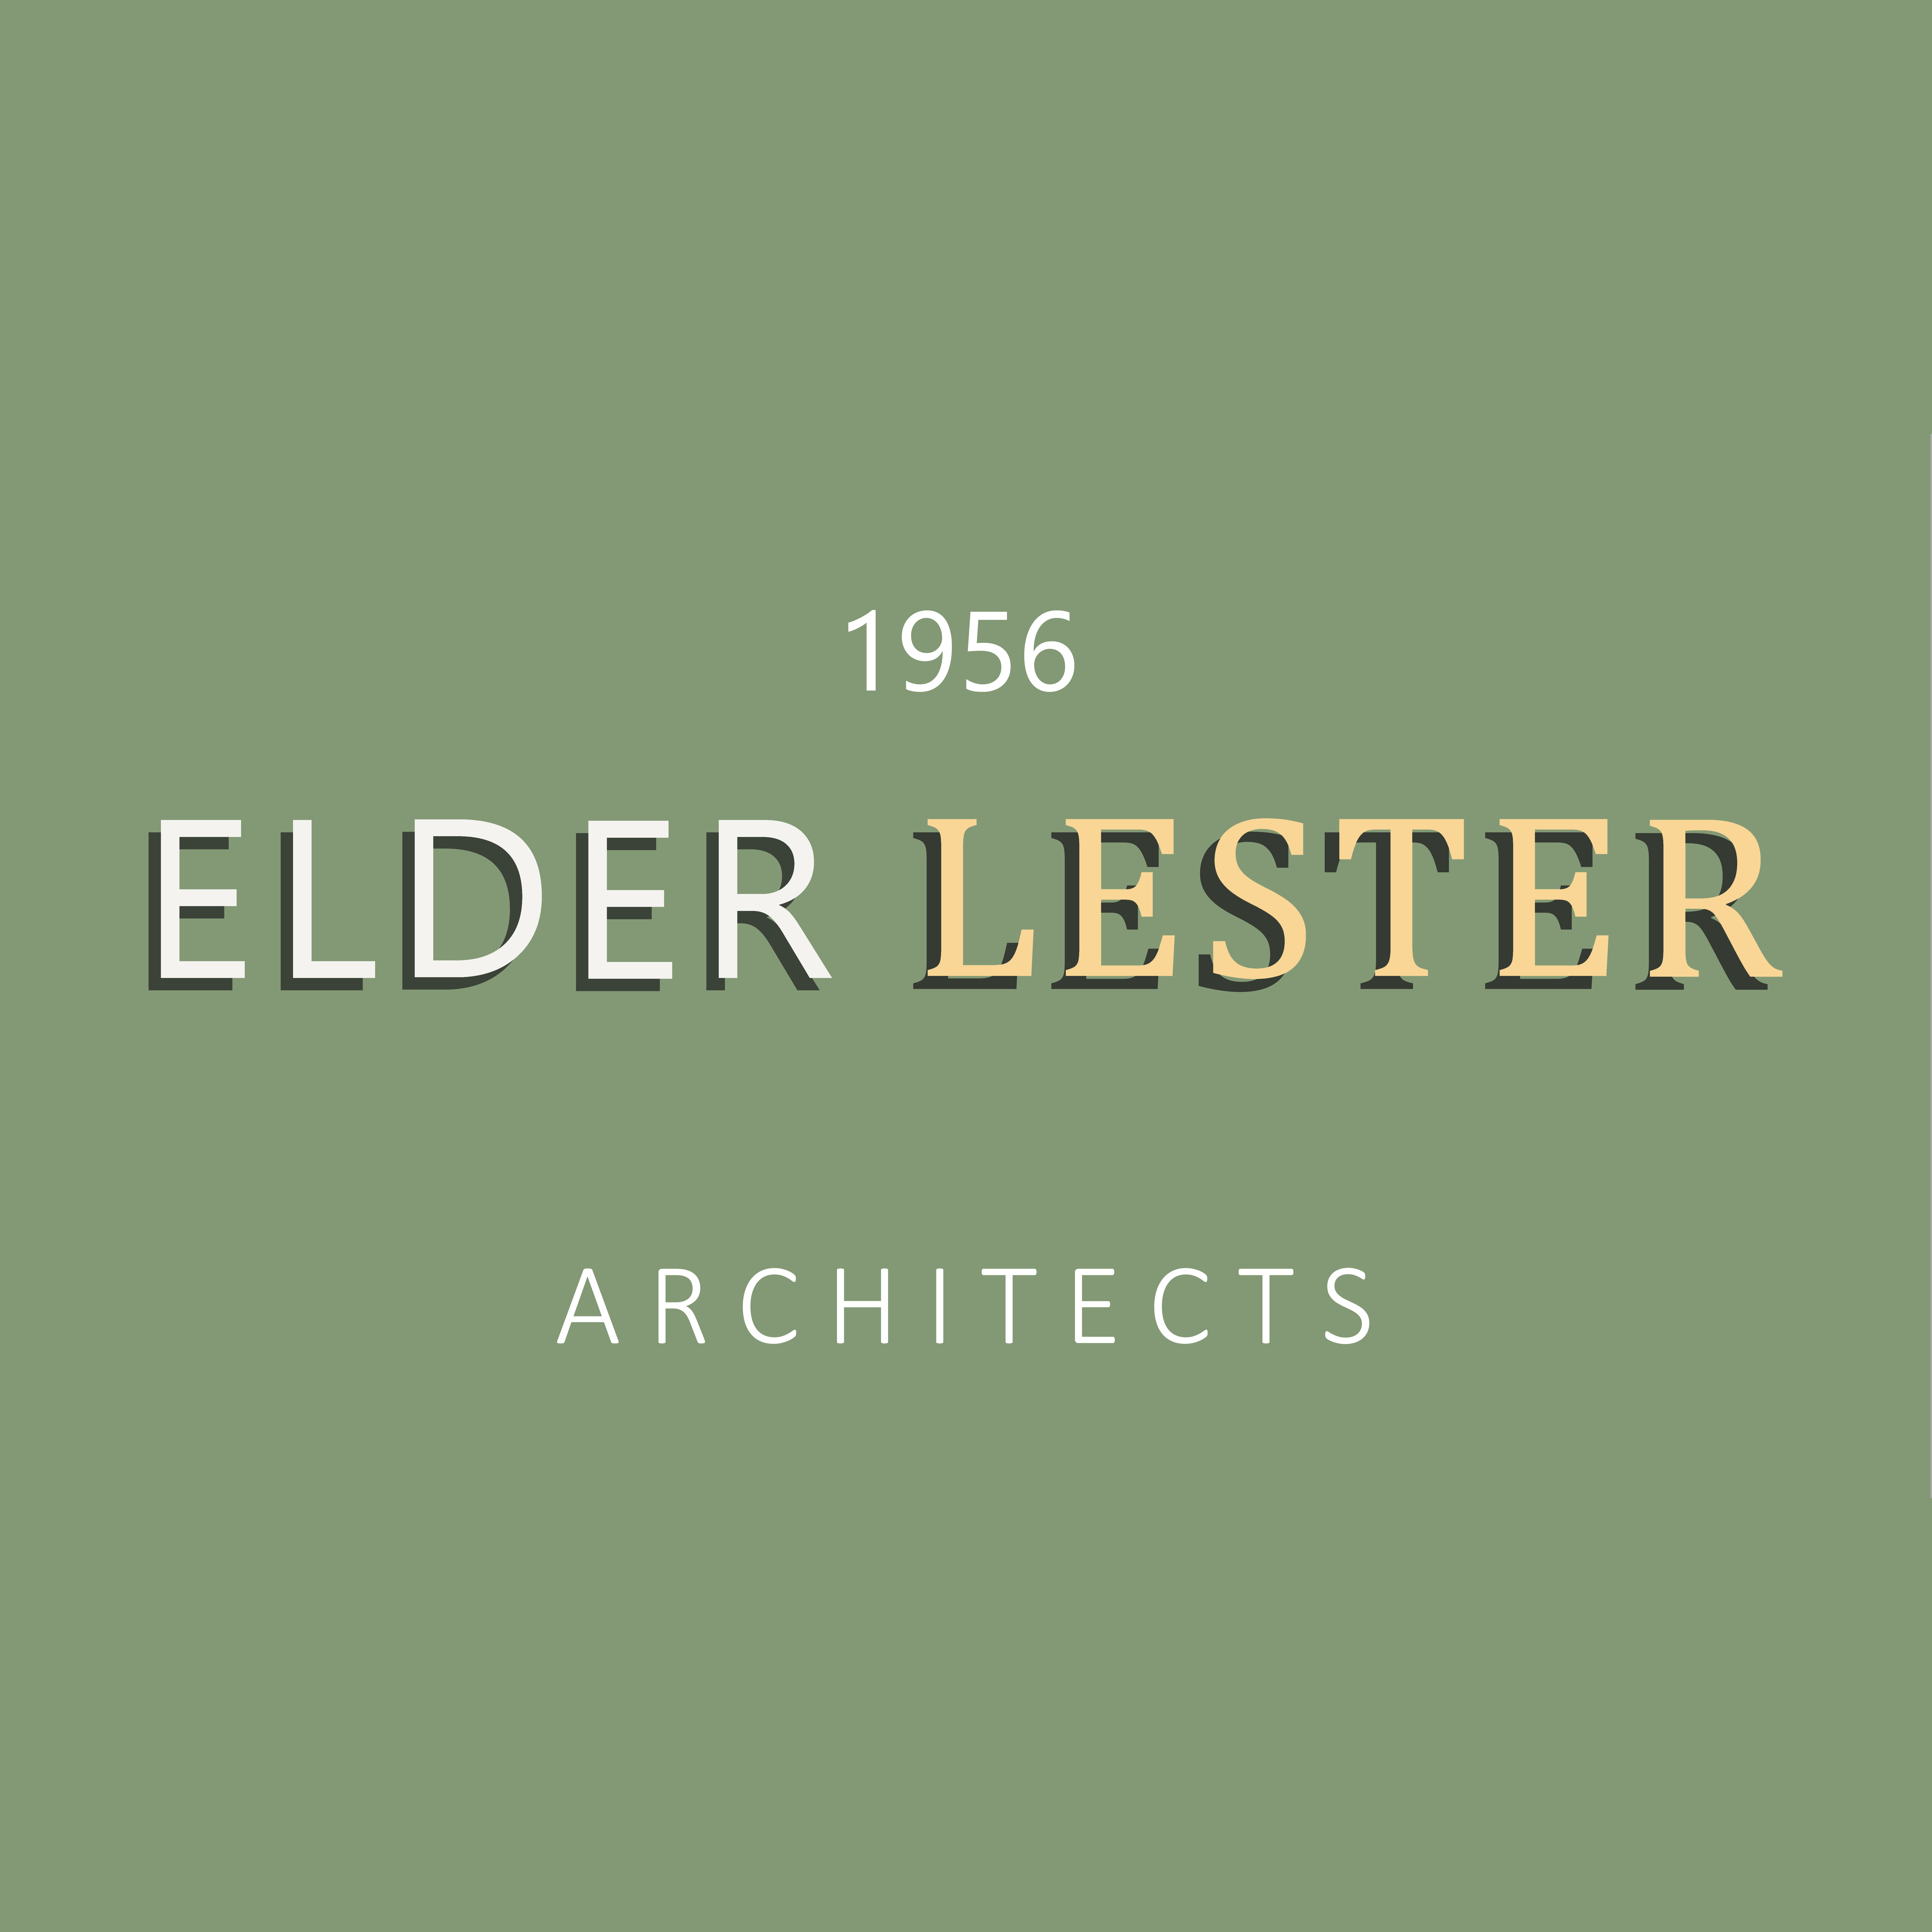 (c) Elderlester.co.uk